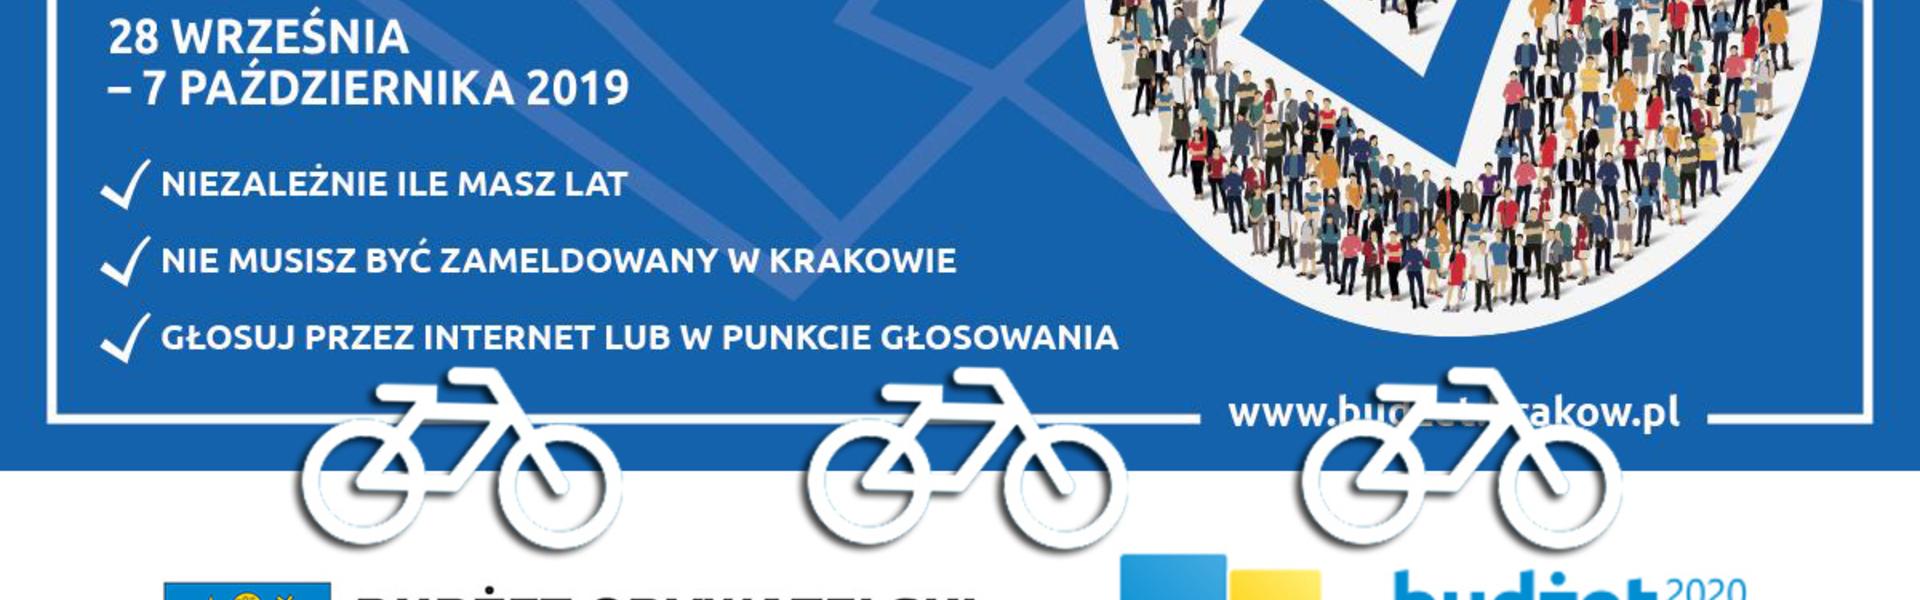 Projekty rowerowe w Budżetach Obywatelskich małopolskich miast